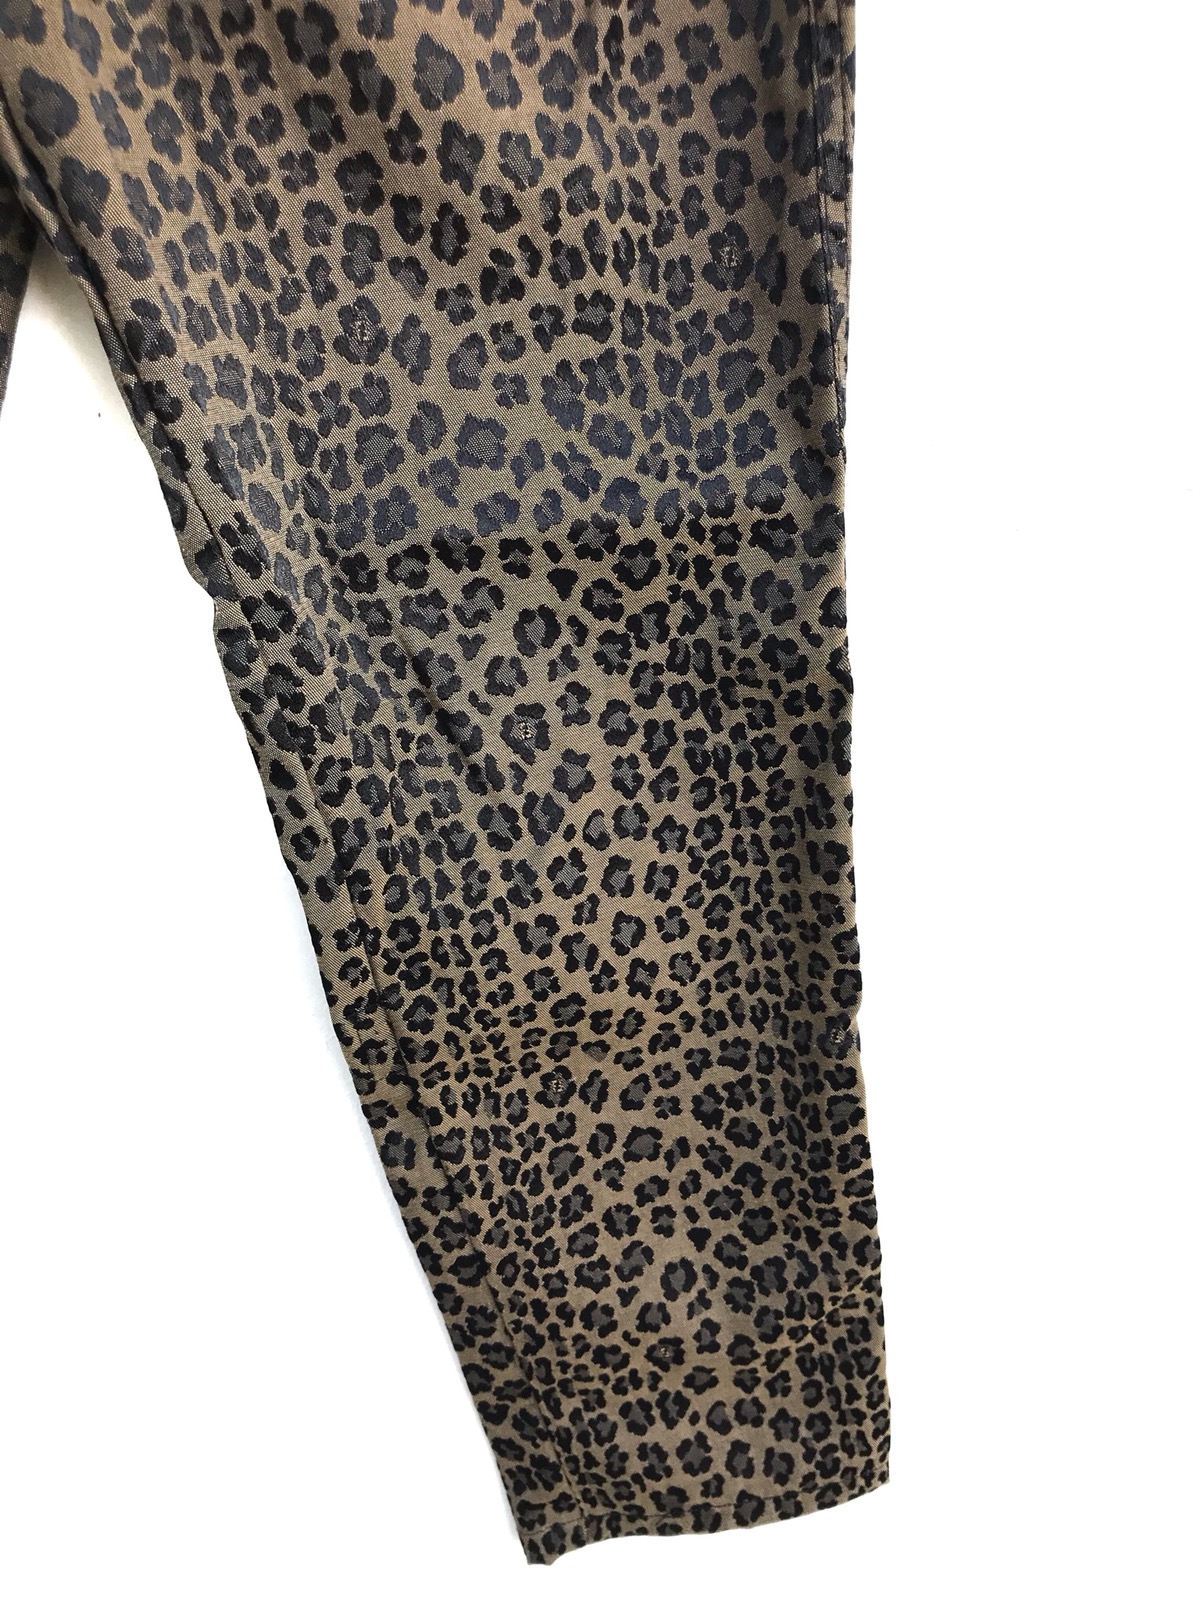 Authentic Fendi Leopard Print Trousers Pants - 7